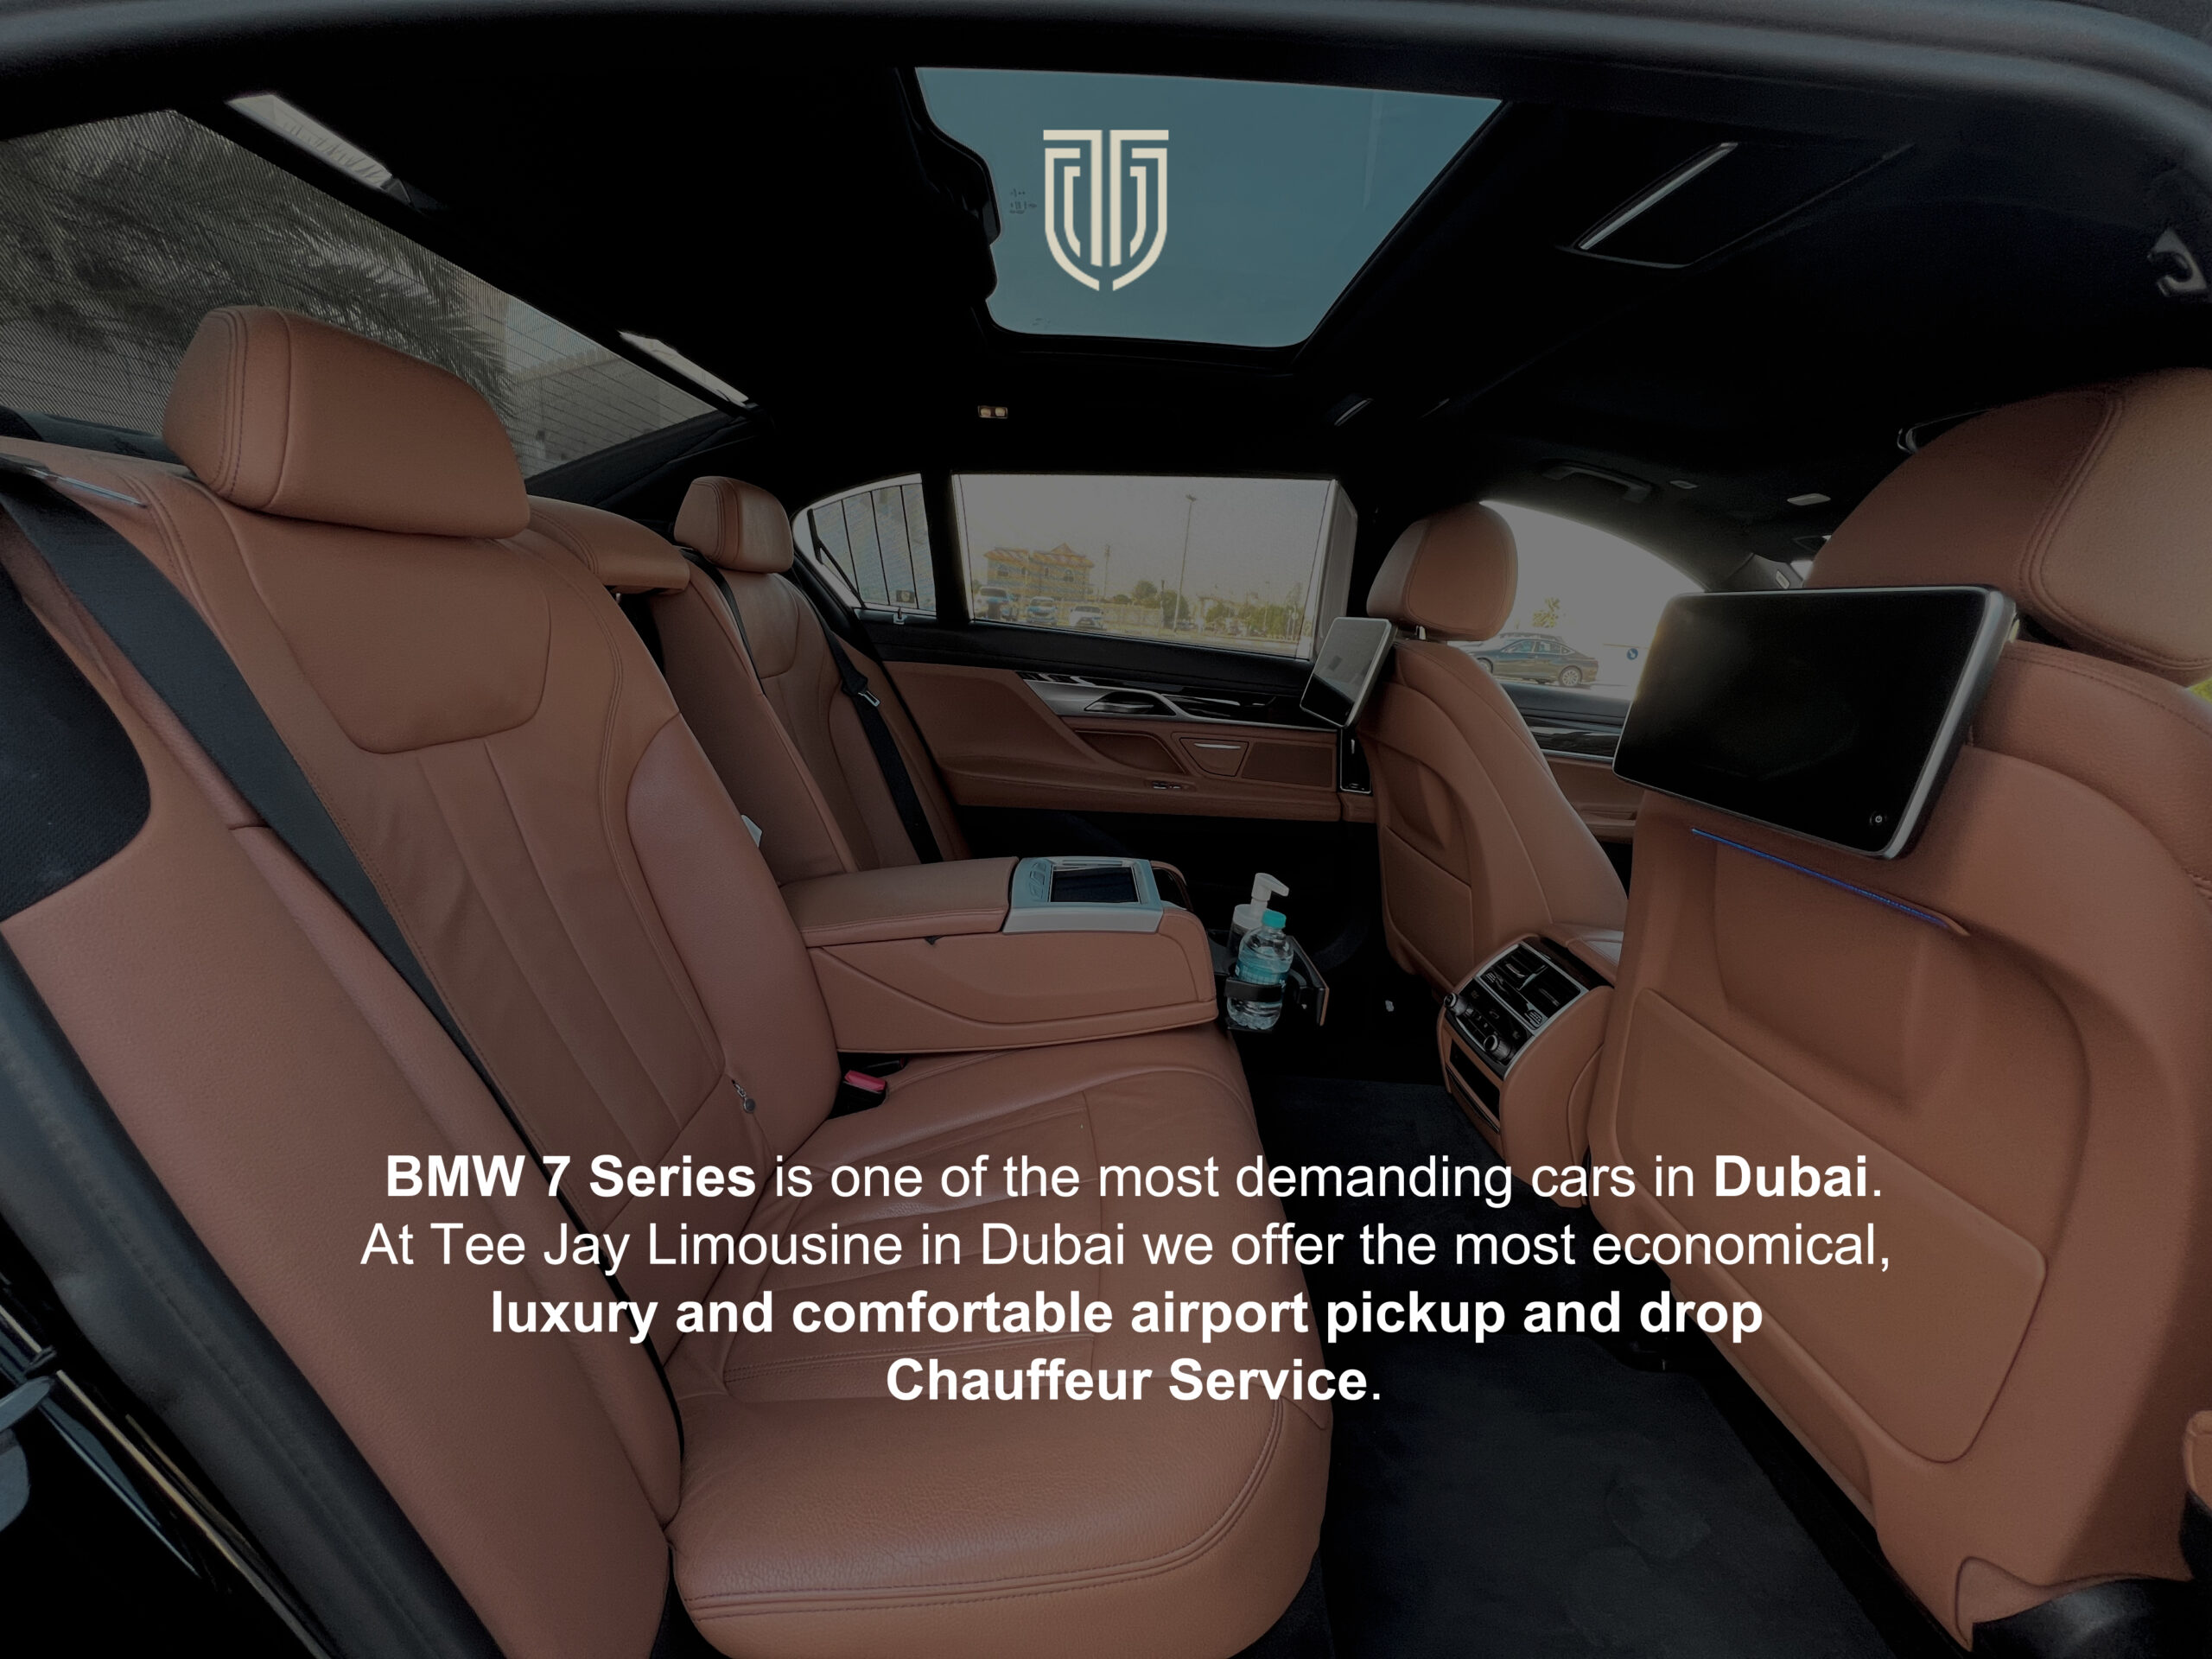 Dubai luxury chauffeur service